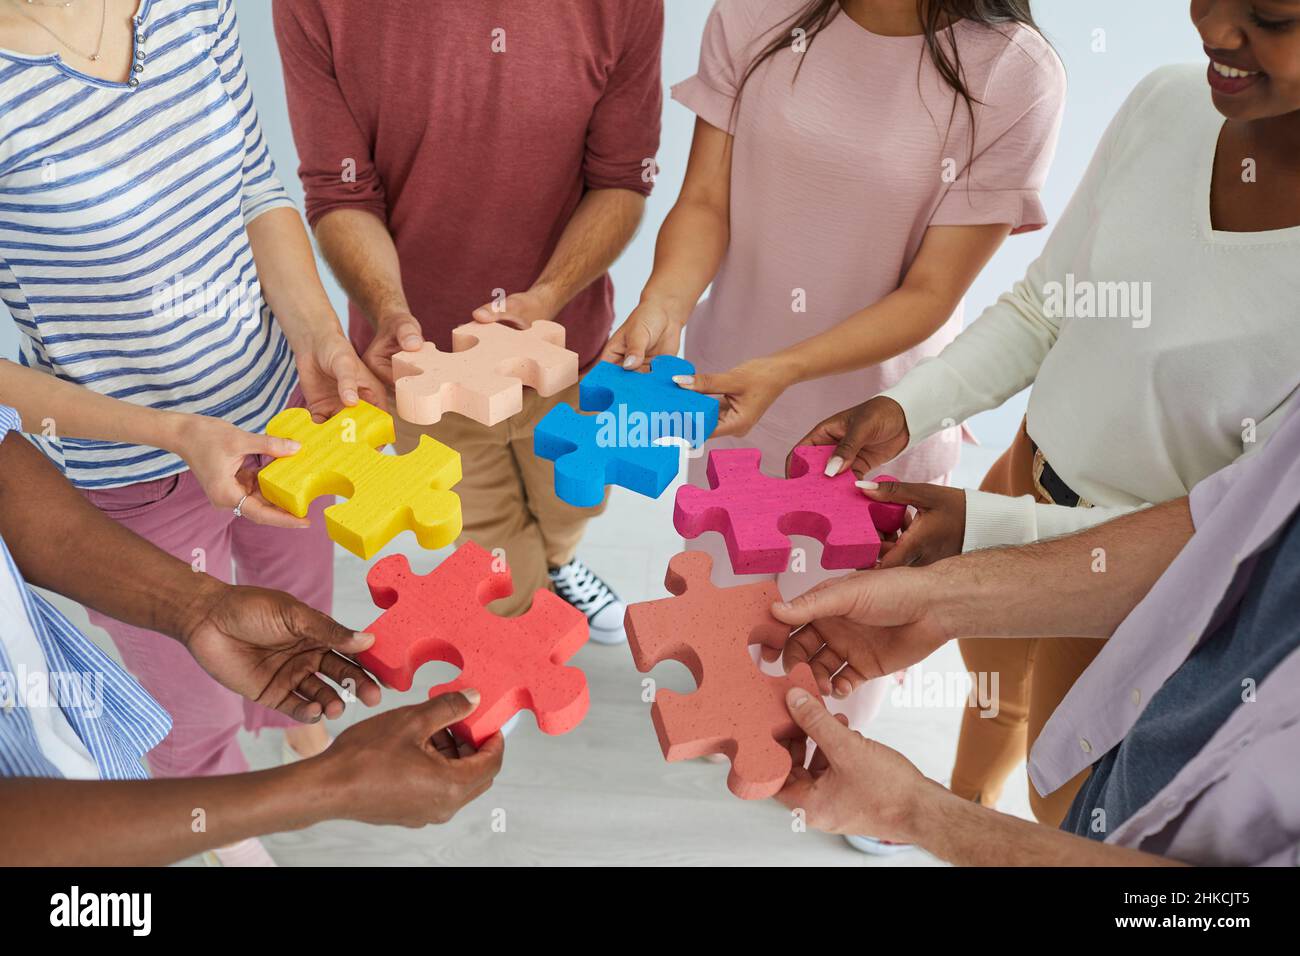 Une équipe diversifiée de jeunes hommes et femmes heureux se joignant à des pièces colorées de puzzle puzzle Banque D'Images